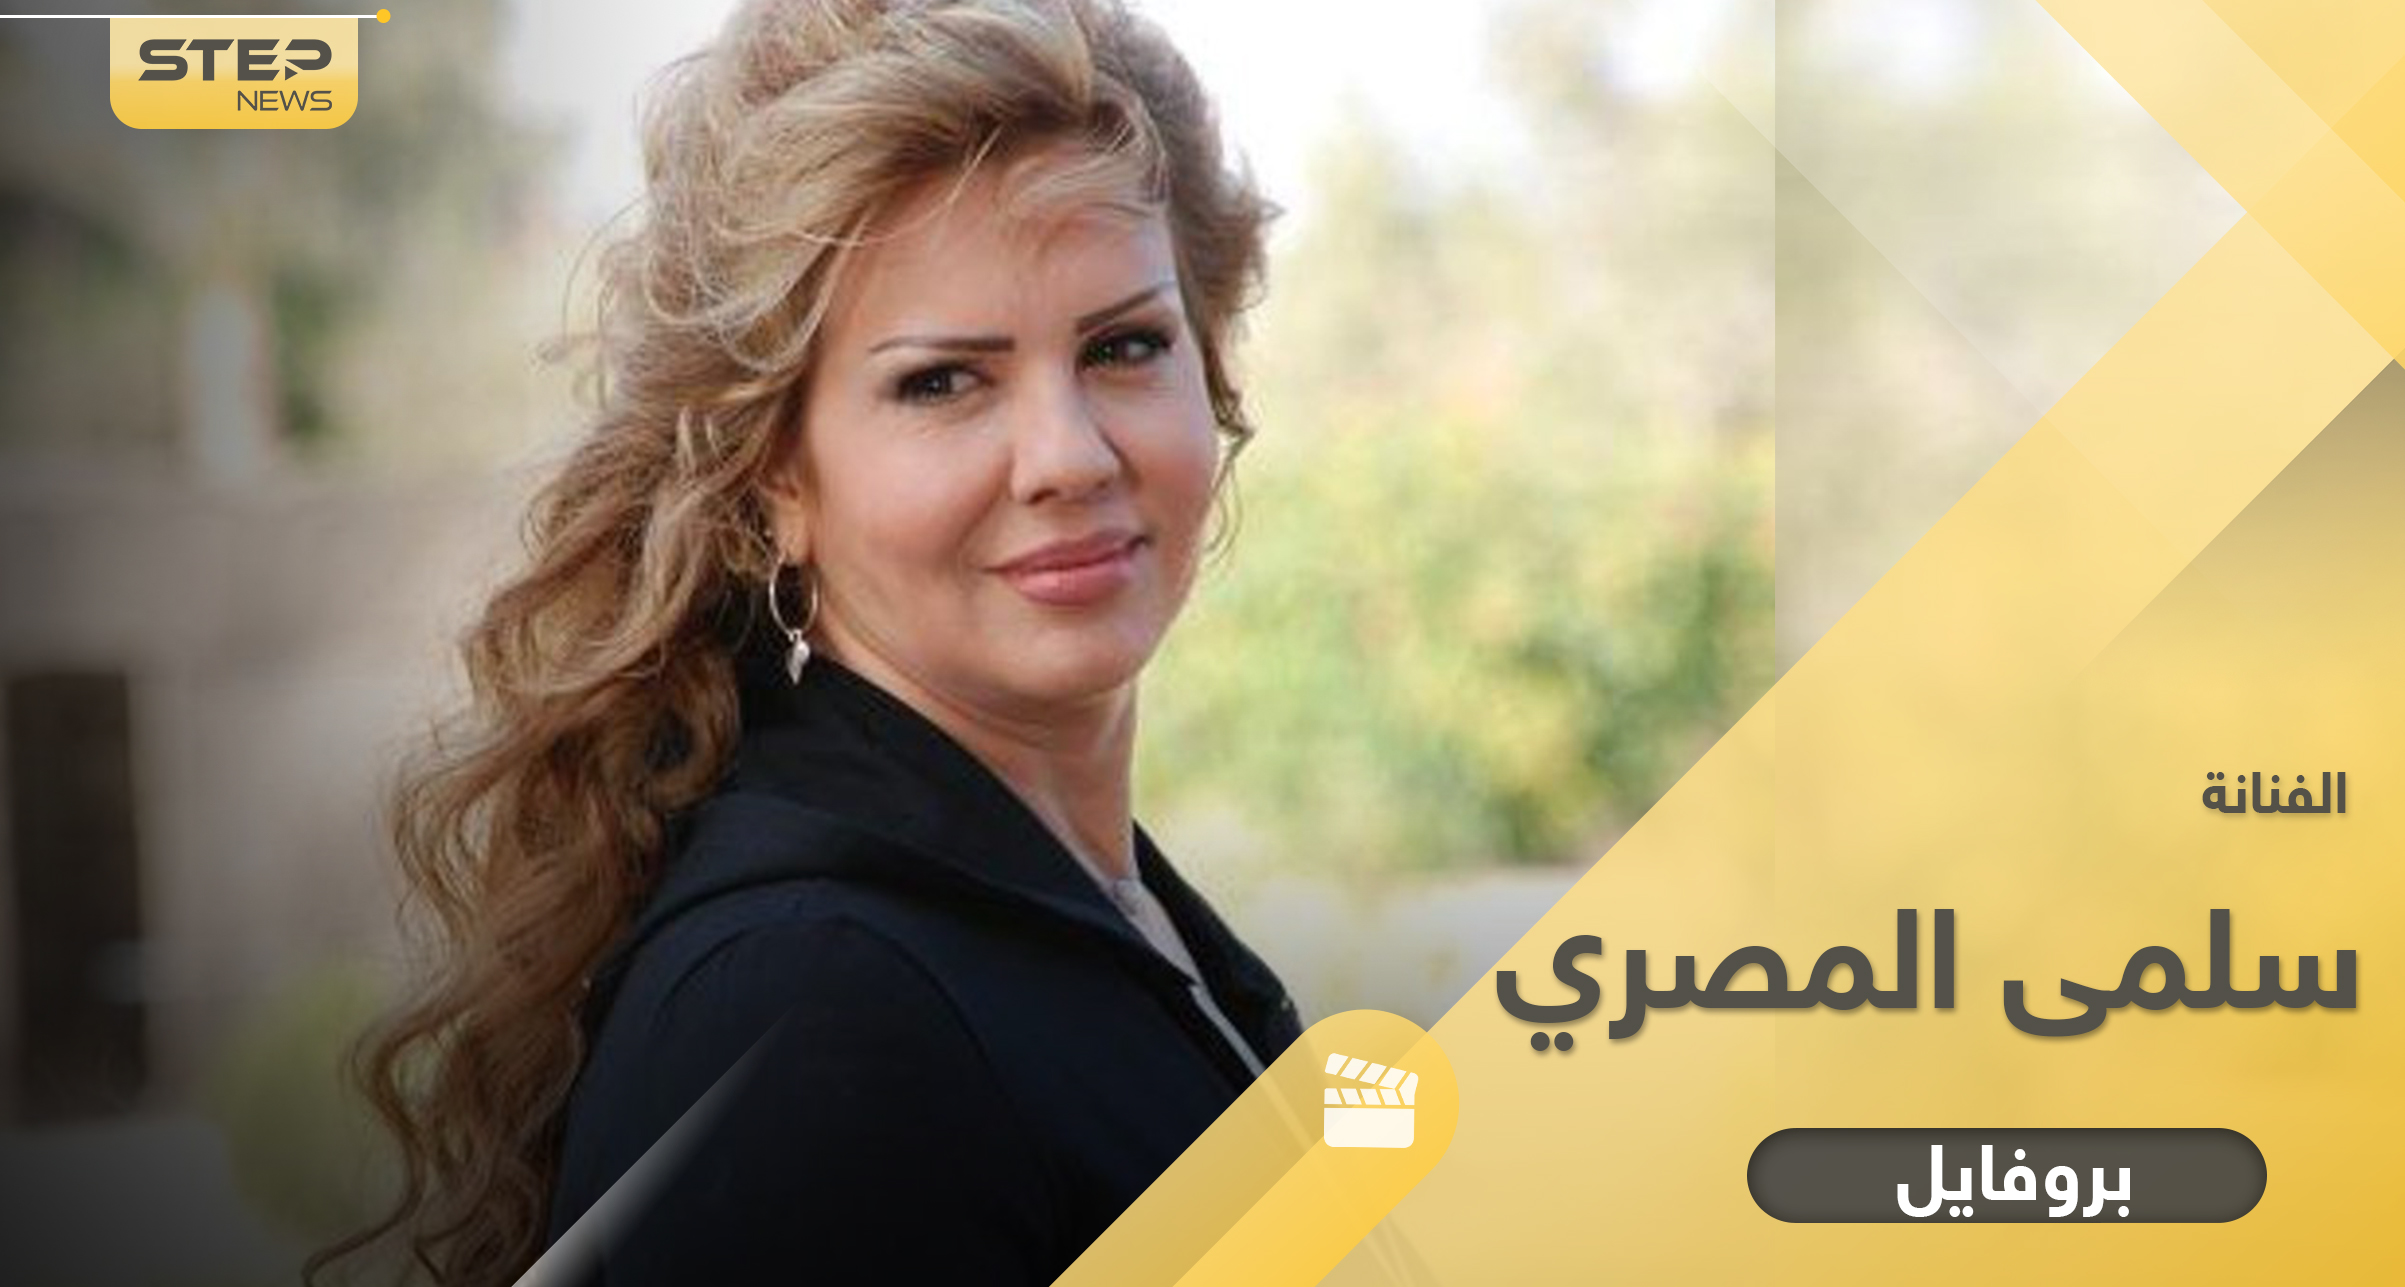 سلمى المصري "حبلاسة الشام" تزوجت من إعلامي سوري شهير لشهرين فقط وانطلقت على يد دريد لحام